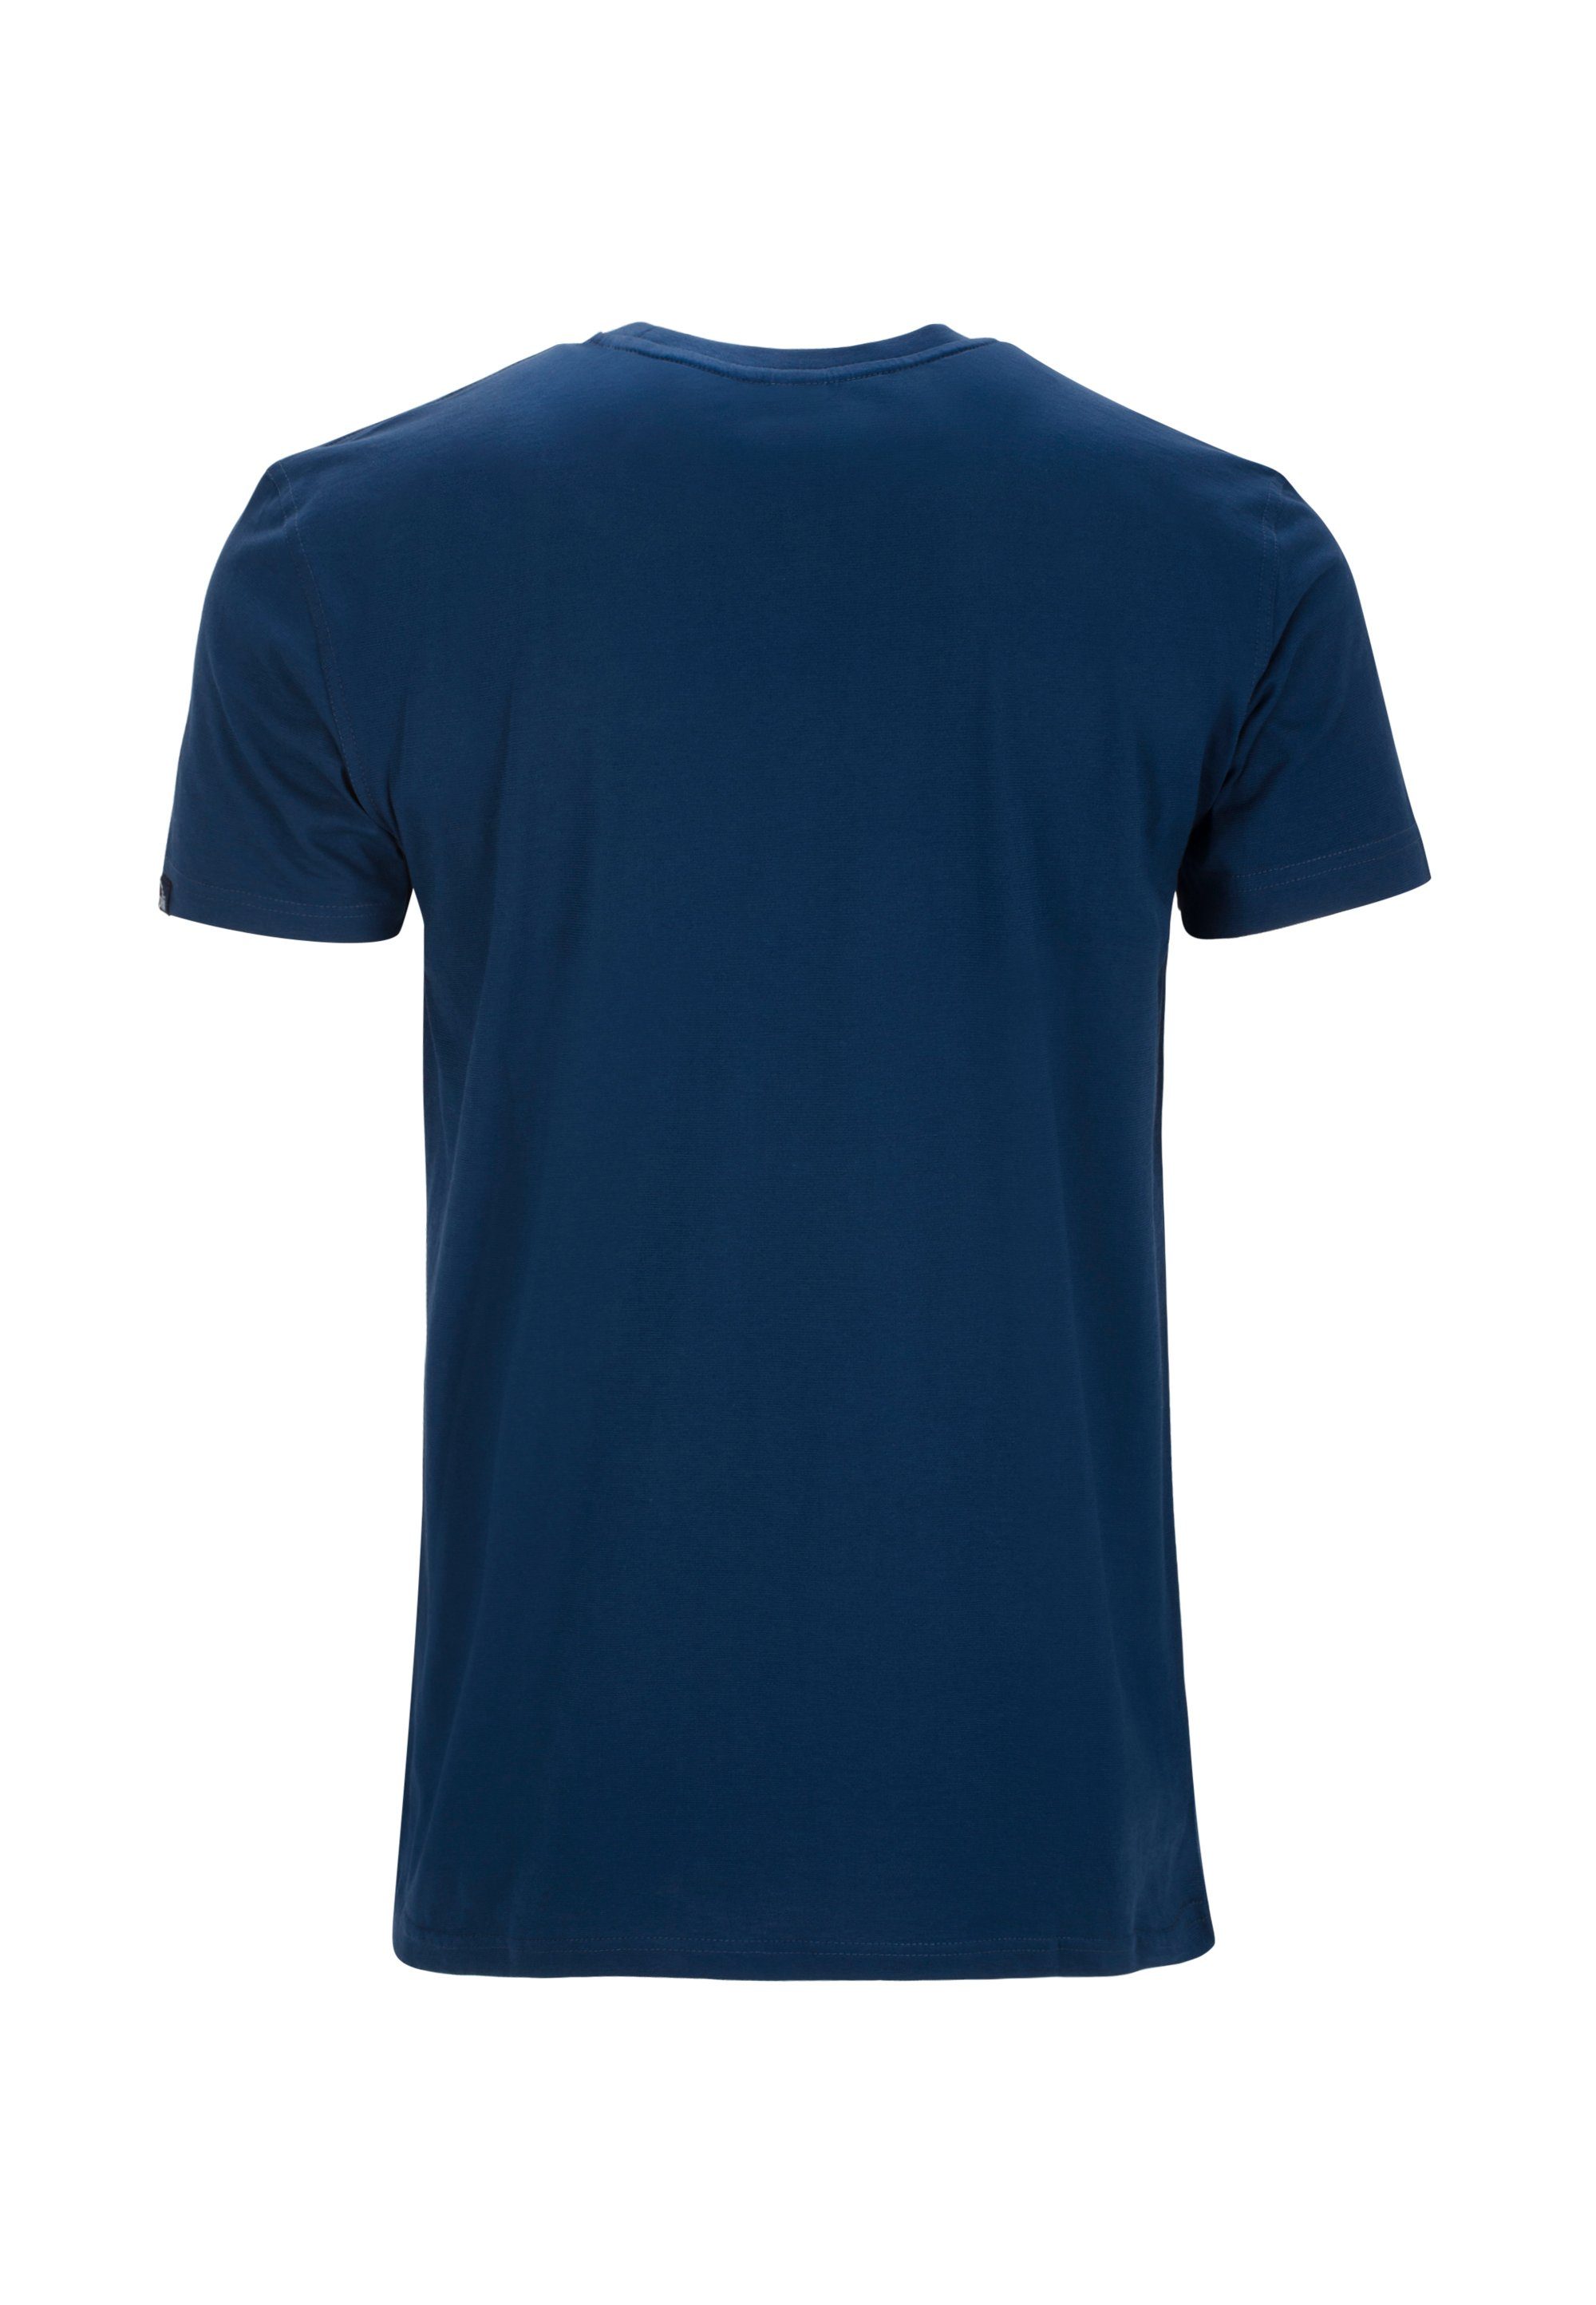 AHORN SPORTSWEAR T-Shirt Basic-Look klassischen blau im